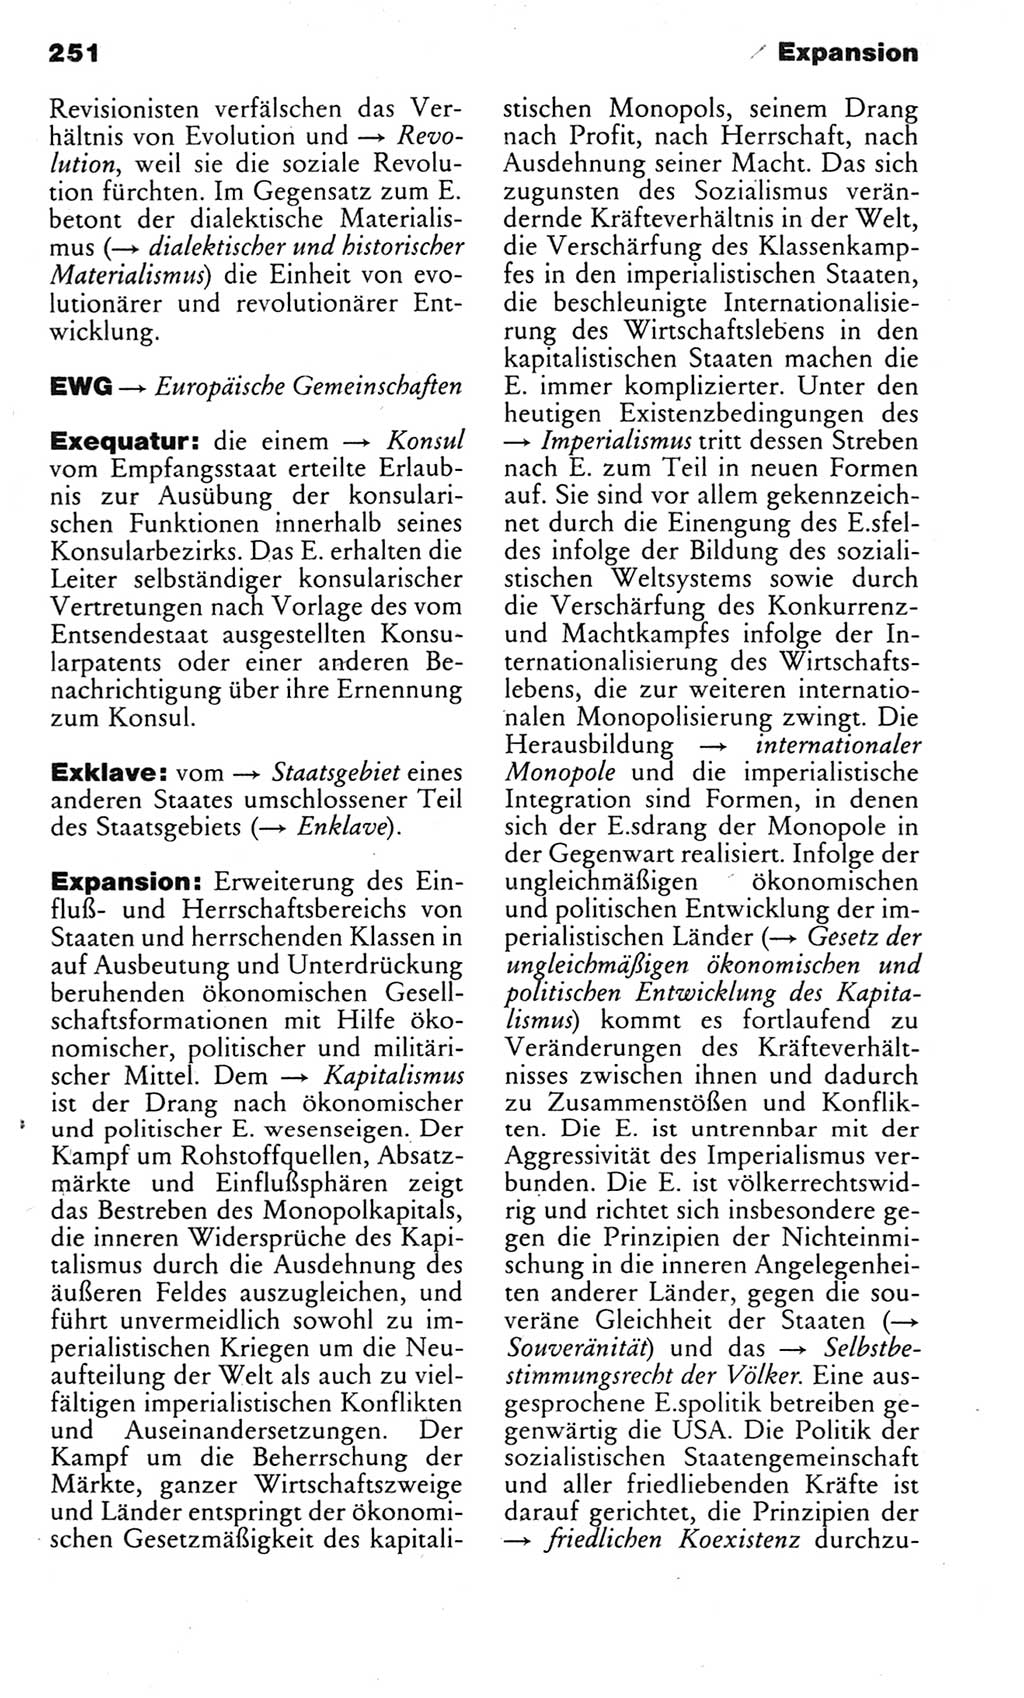 Kleines politisches Wörterbuch [Deutsche Demokratische Republik (DDR)] 1983, Seite 251 (Kl. pol. Wb. DDR 1983, S. 251)